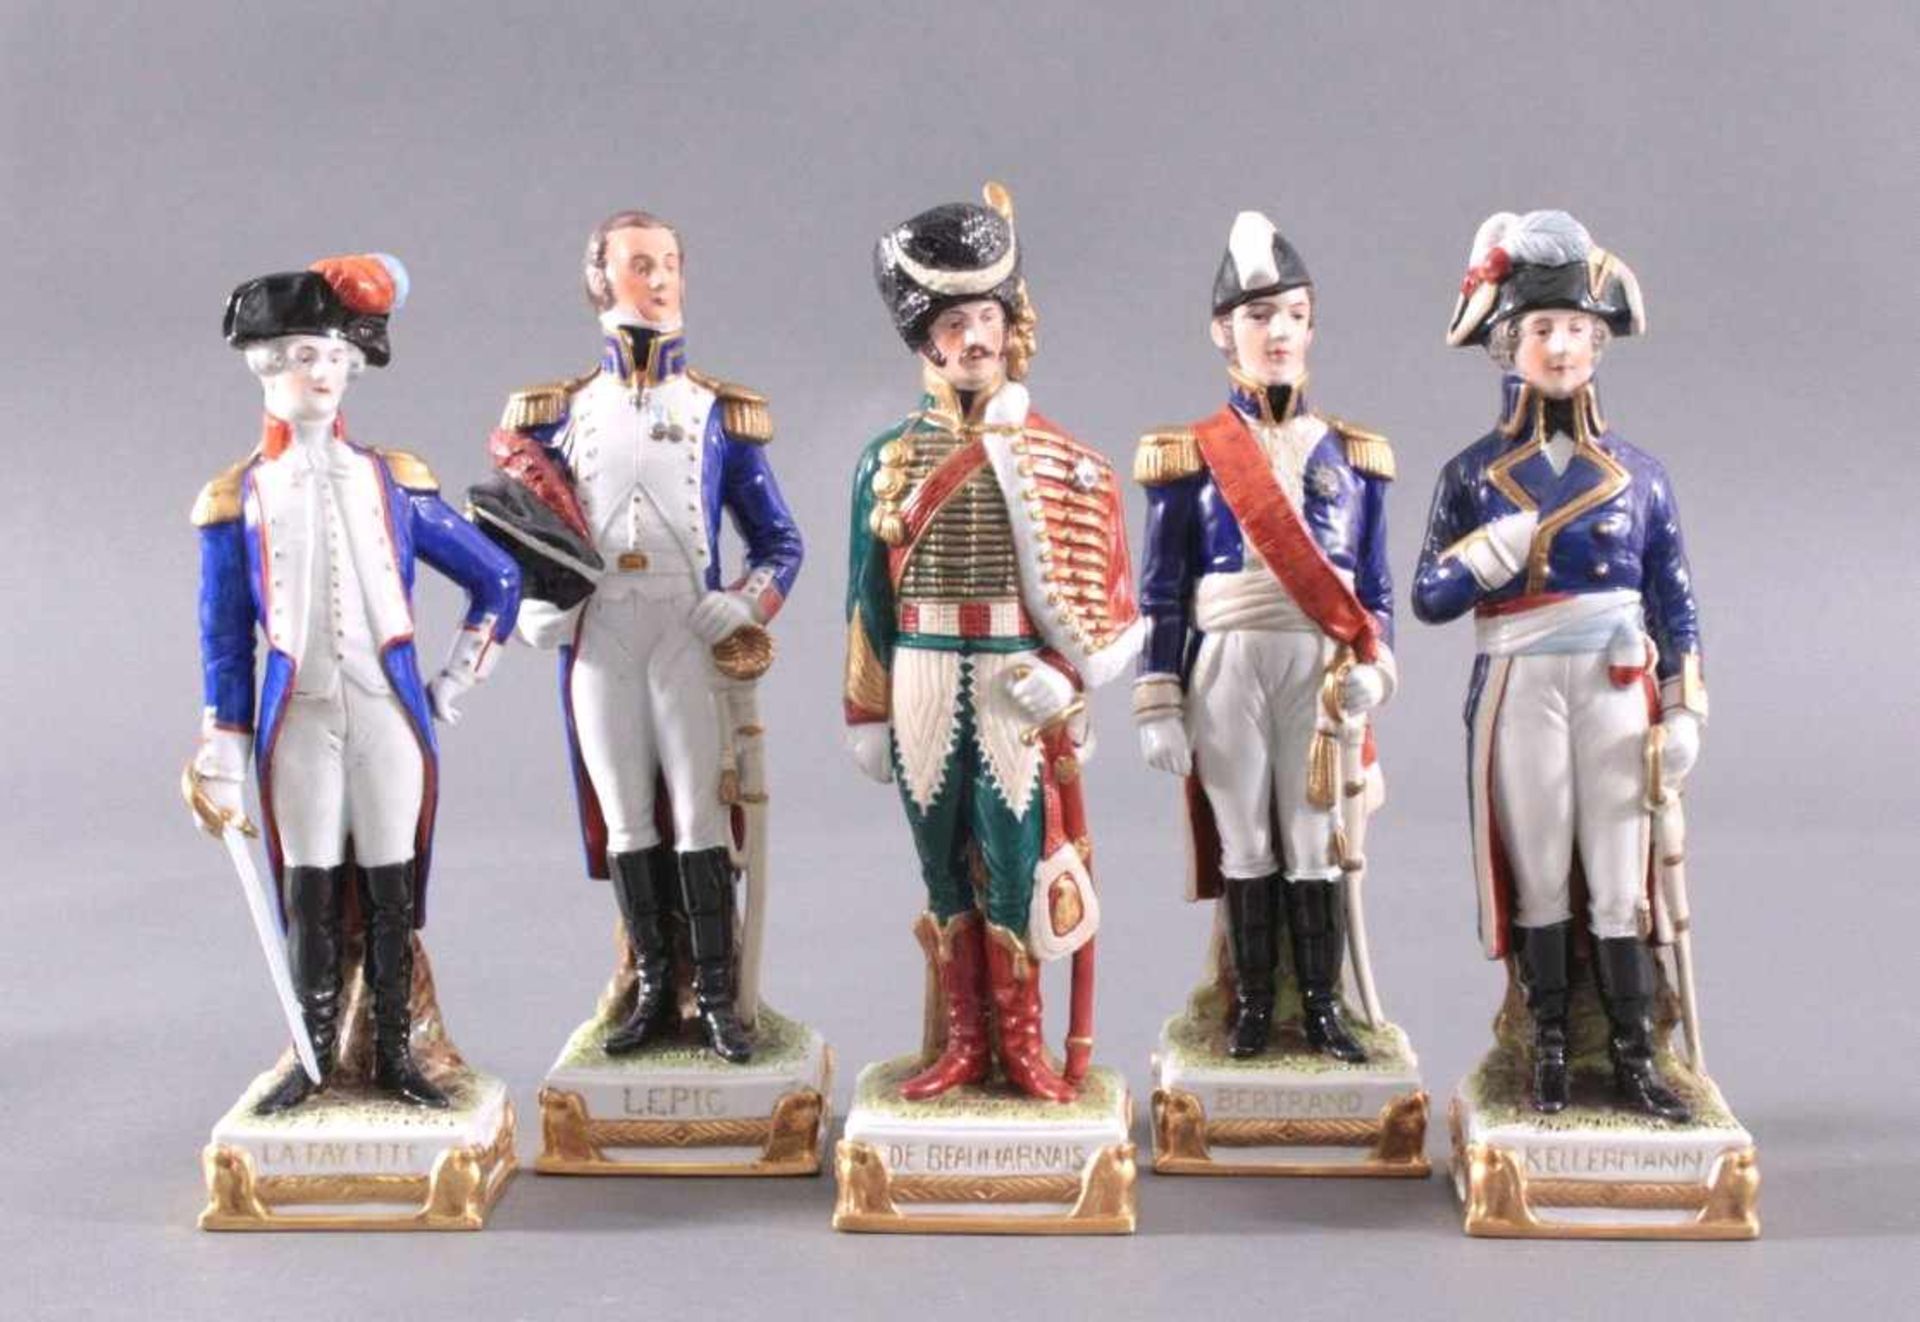 5 Porzellanfiguren, Die Generäle NapoleonsManufaktur Scheibe-Alsbach. Alle farbig bemalt und